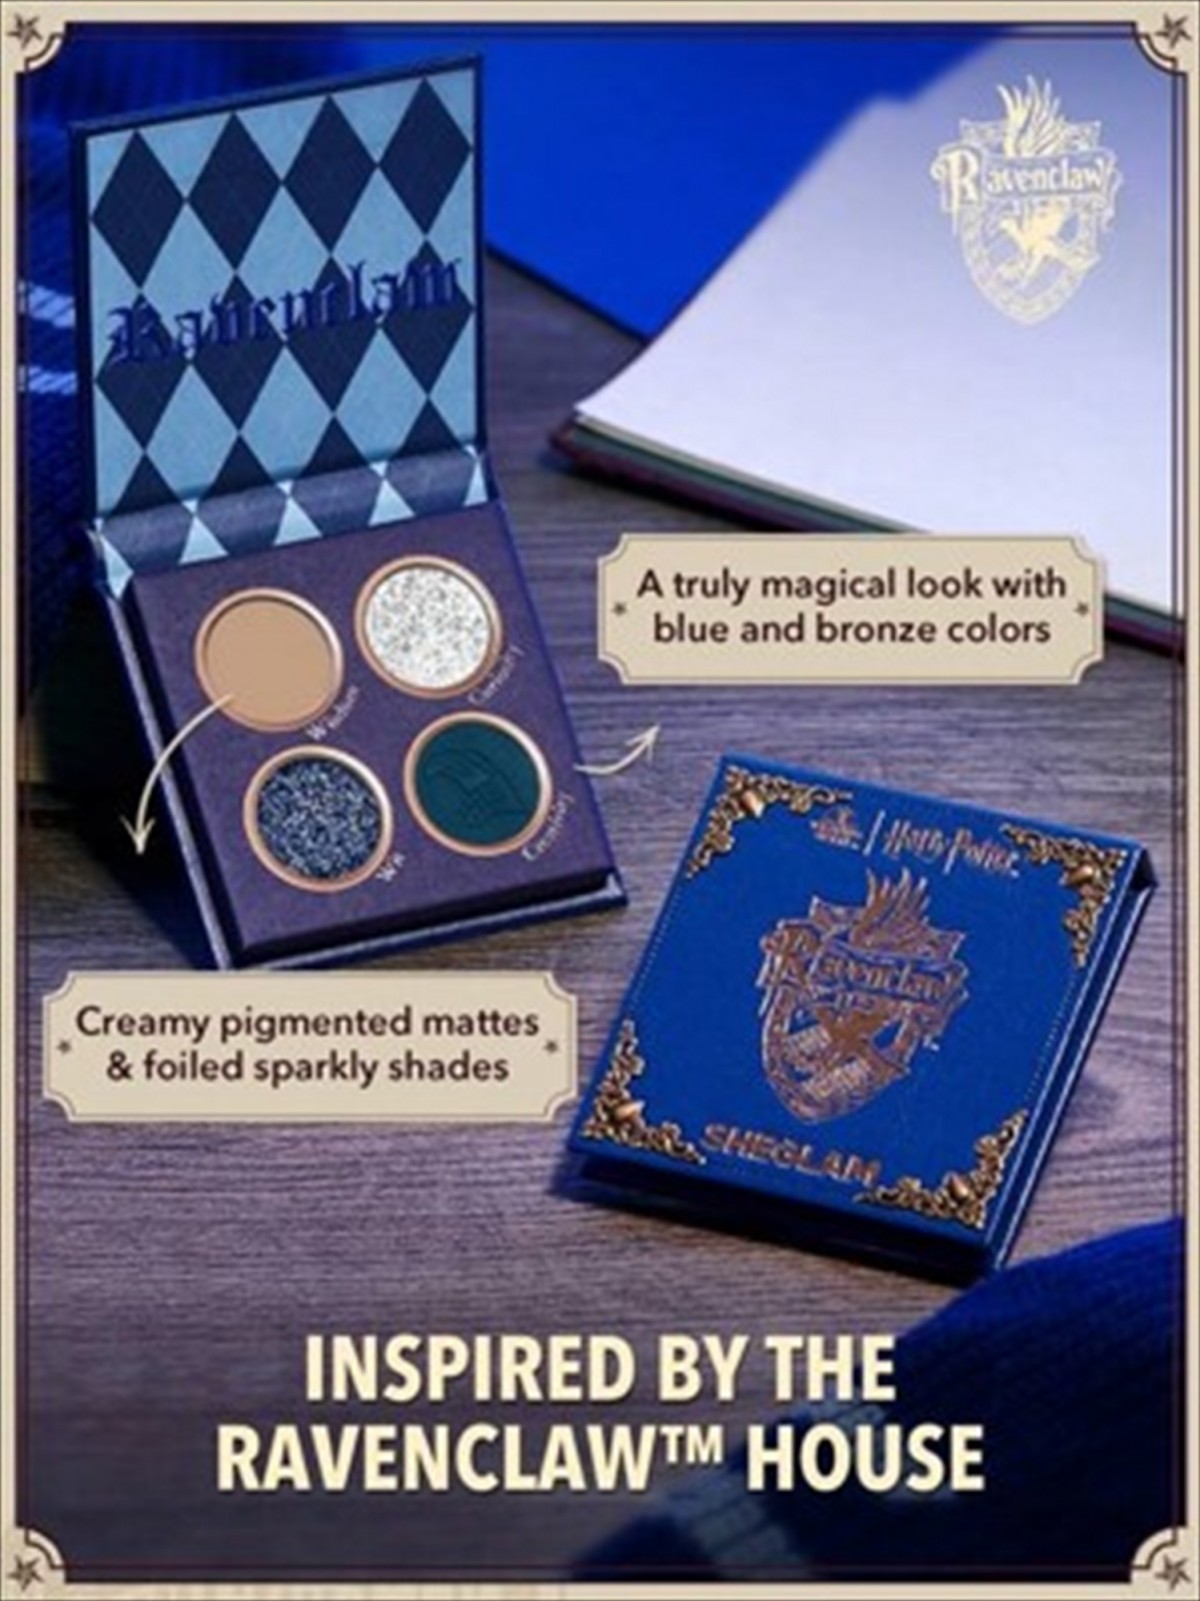 ハリー・ポッター”魔法学校の世界観あふれるコスメアイテム、SHEGLAM 